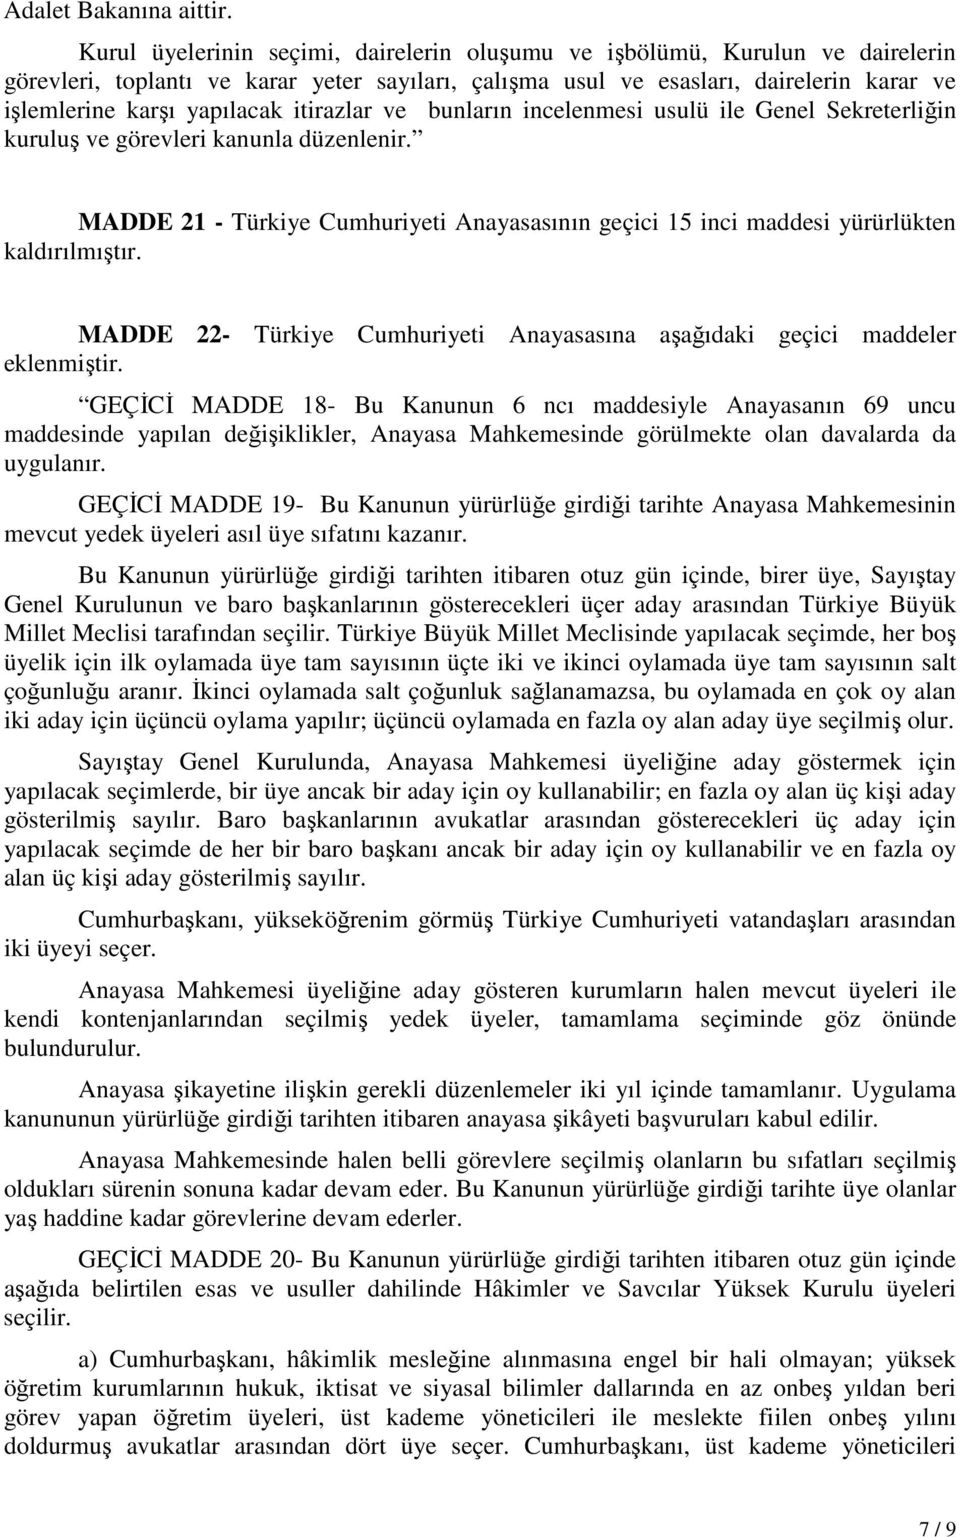 itirazlar ve bunların incelenmesi usulü ile Genel Sekreterliğin kuruluş ve görevleri kanunla düzenlenir. MADDE 21 - Türkiye Cumhuriyeti Anayasasının geçici 15 inci maddesi yürürlükten kaldırılmıştır.